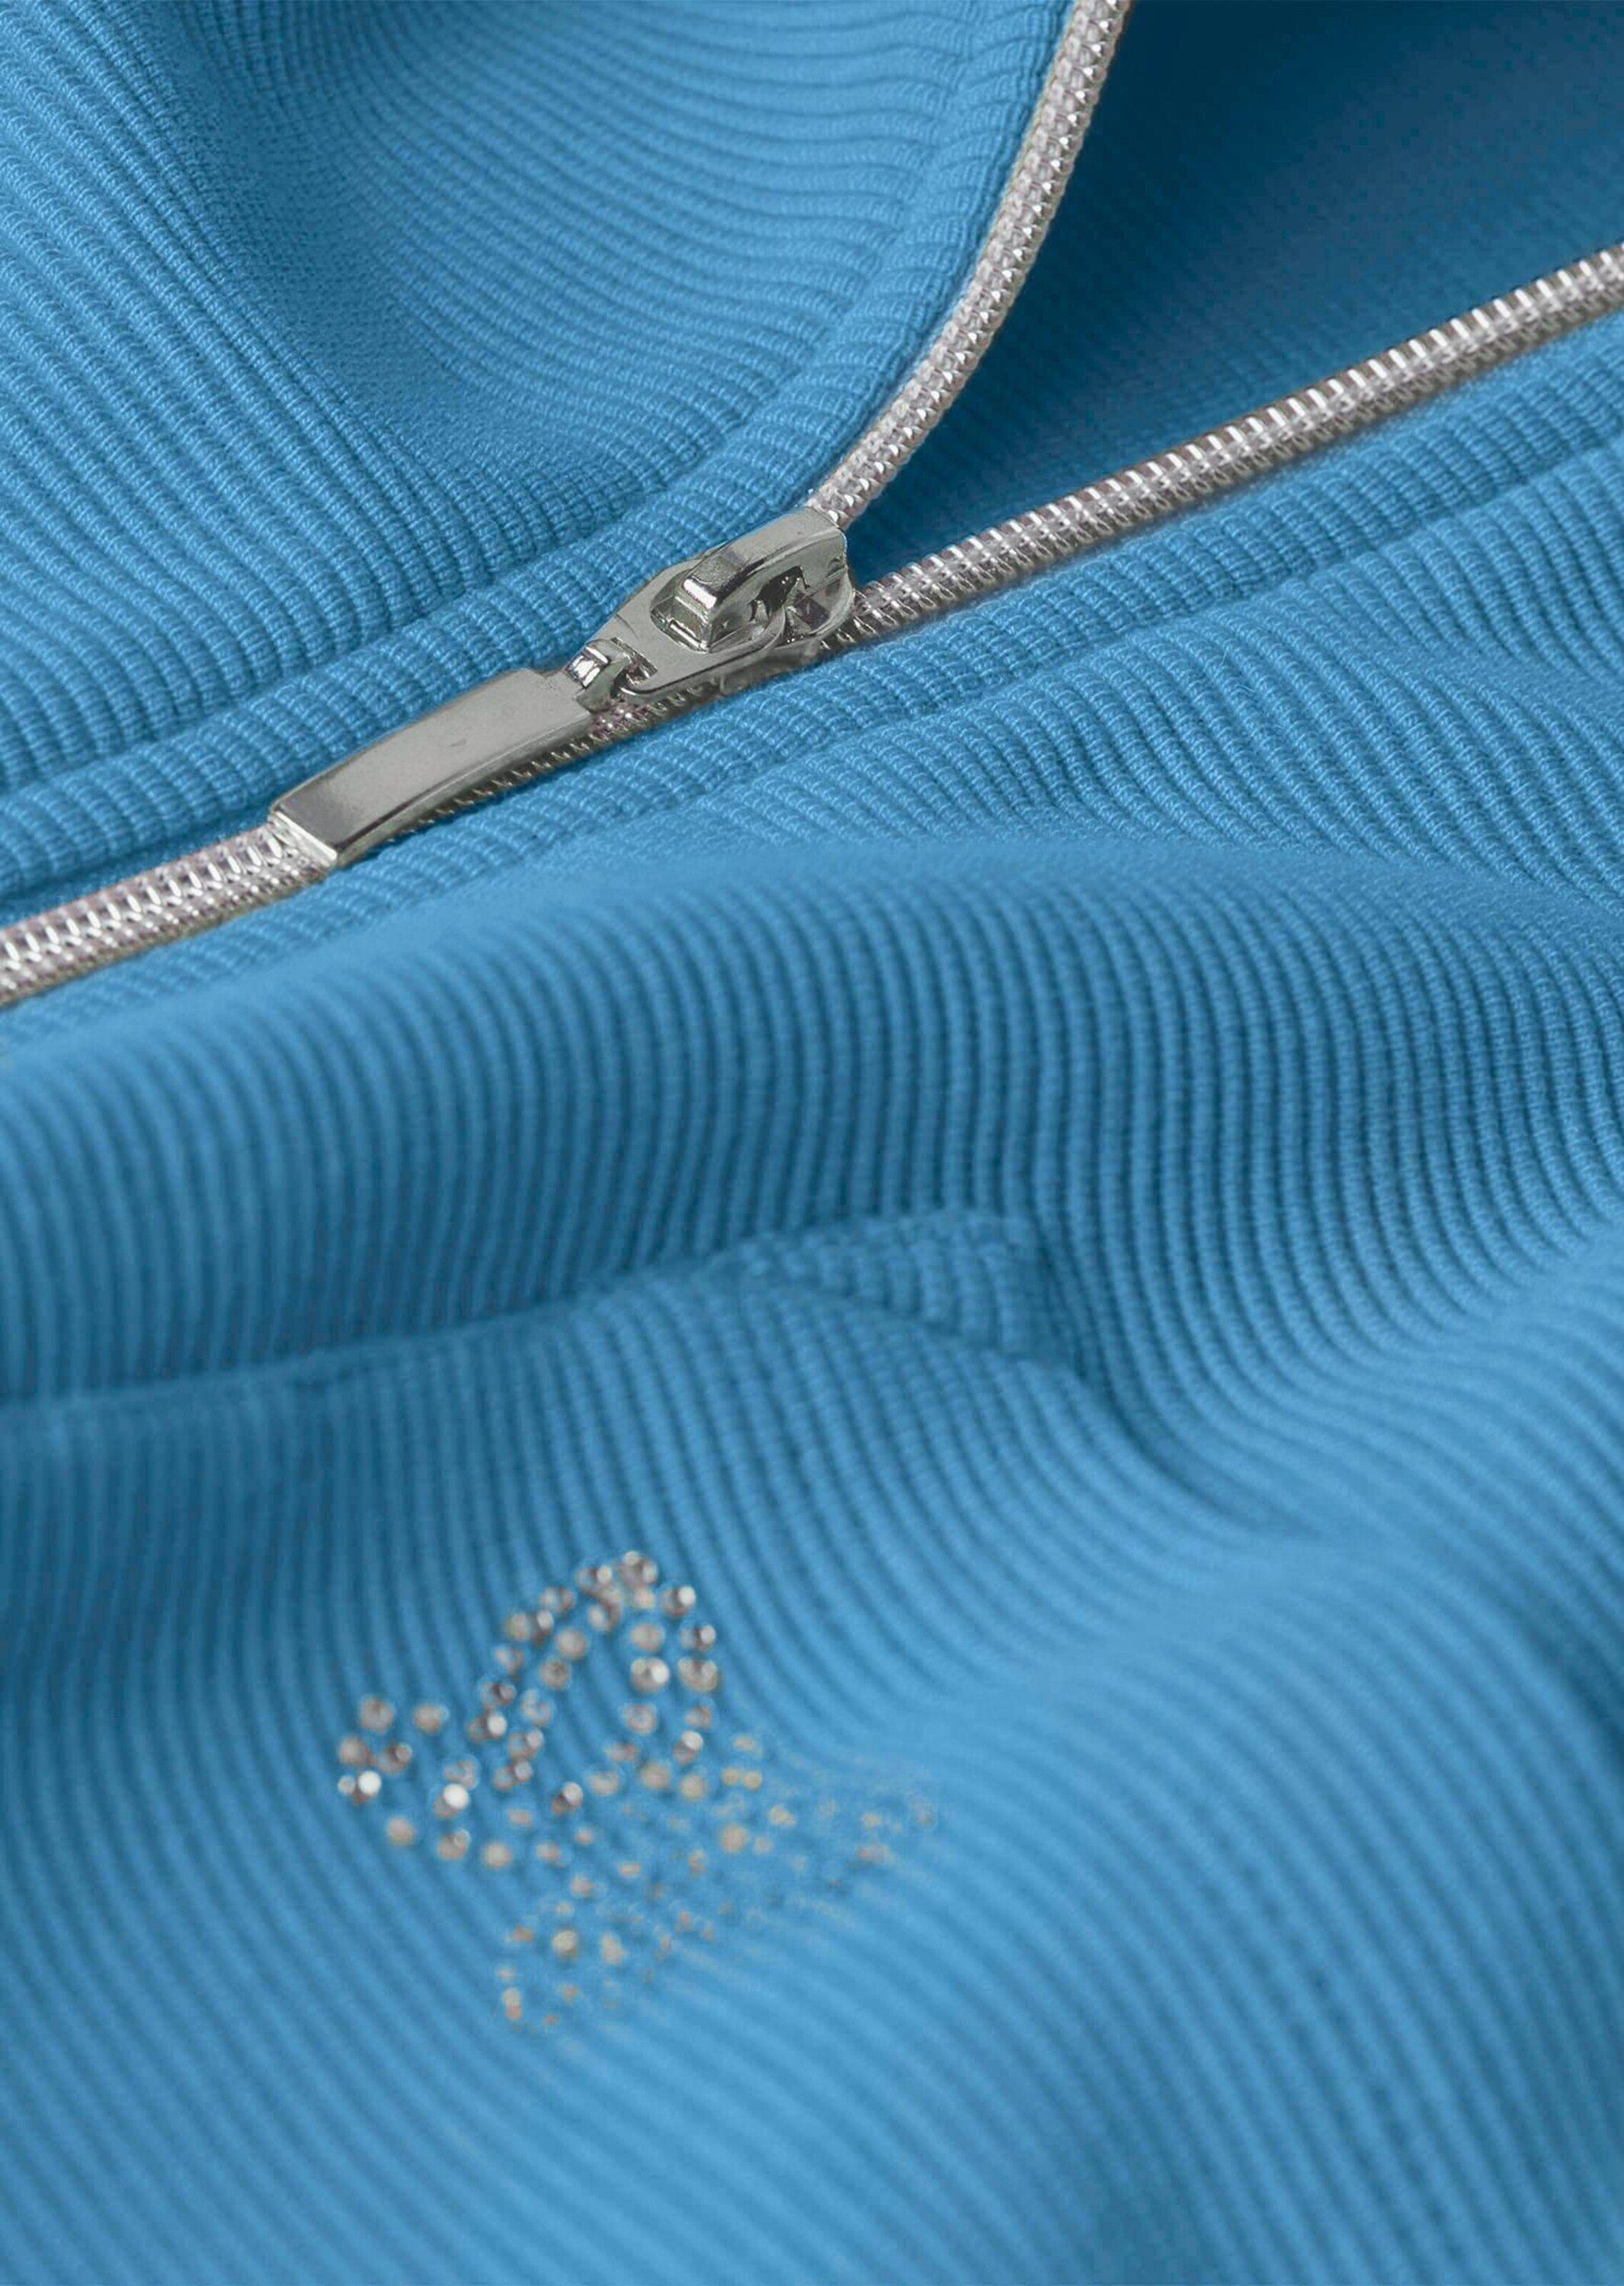 GOLDNER Shirtjacke Bequeme Shirtjacke mit Reißverschluss blau